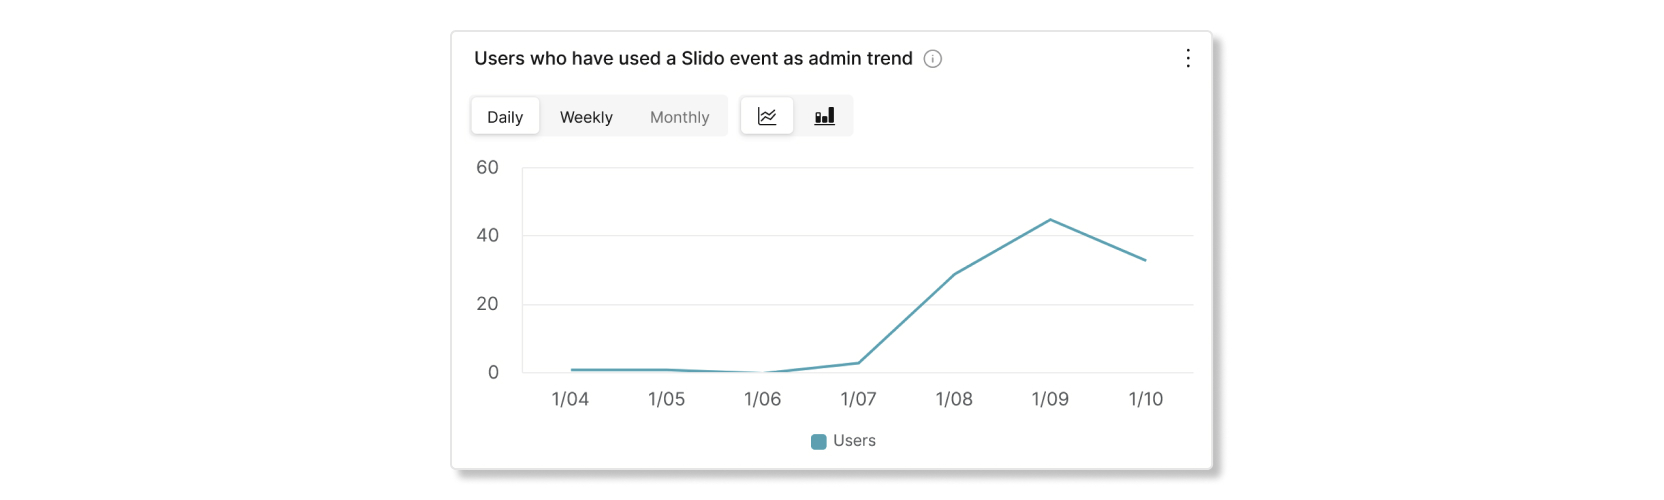 משתמשים שהשתמשו באירוע Slido כתרשים מגמת מנהל מערכת בניתוח Slido של Control Hub